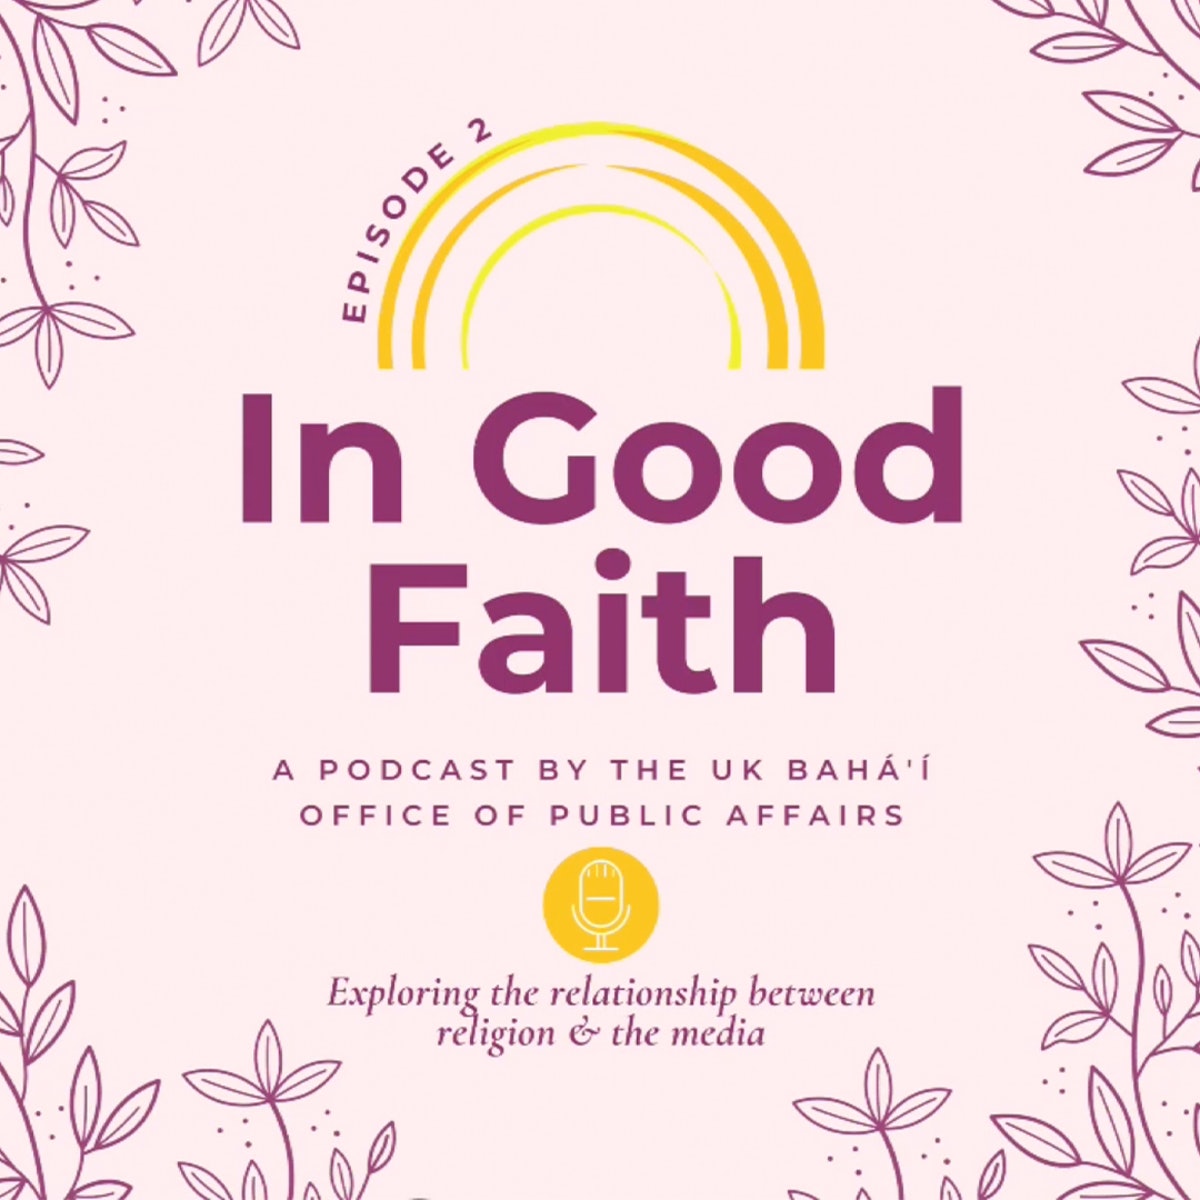 La série de podcasts « In Good Faith » (De bonne foi), produite par le Bureau bahá’í des affaires publiques au Royaume-Uni, invite les journalistes à des discussions approfondies sur la manière dont les médias peuvent jouer un rôle constructif dans la société.